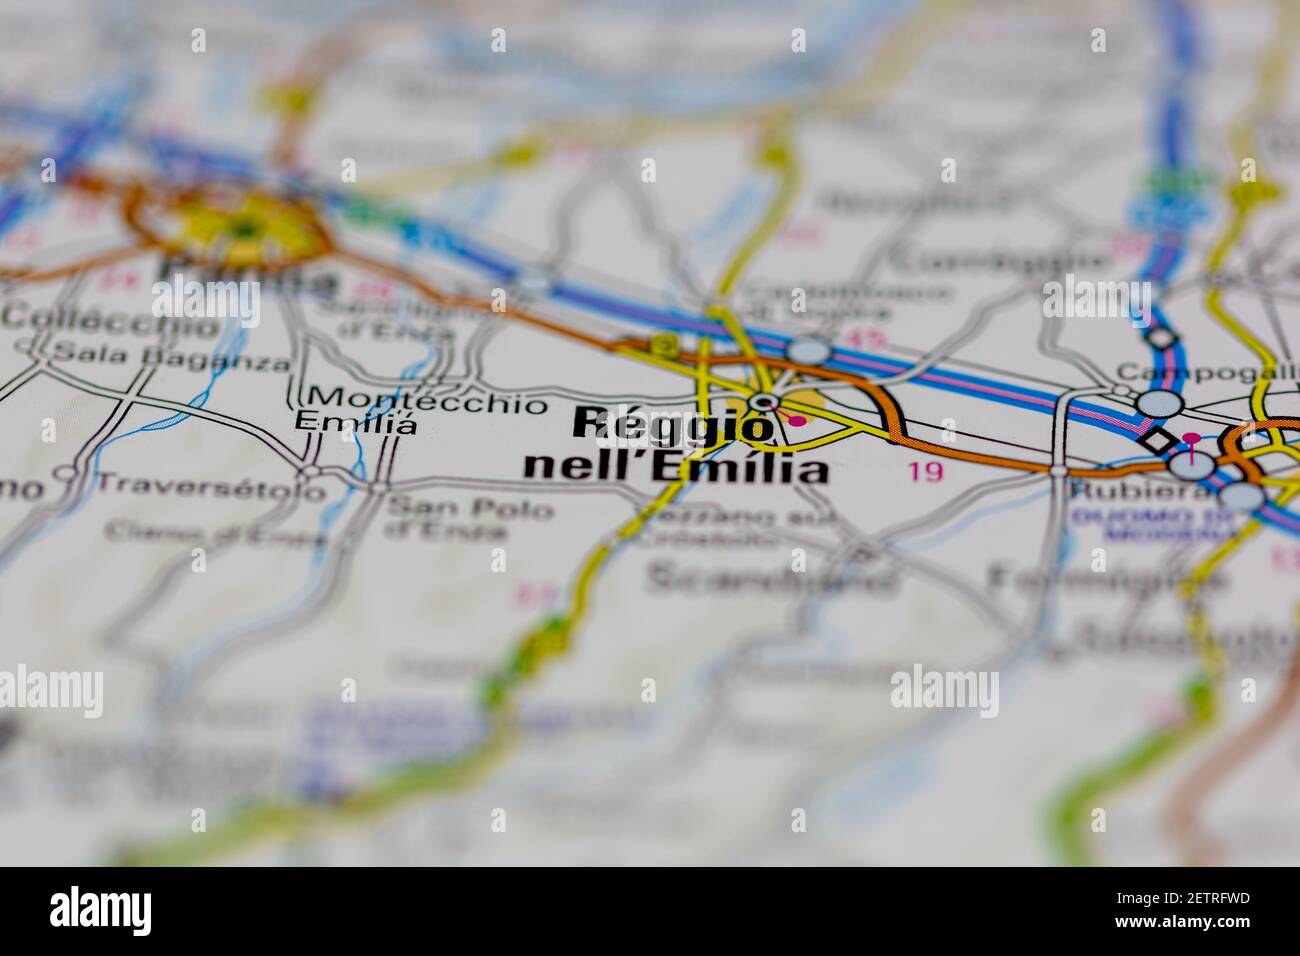 Reggio nell Emilia su una cartina stradale o Geografia mappa e atlante Foto  stock - Alamy